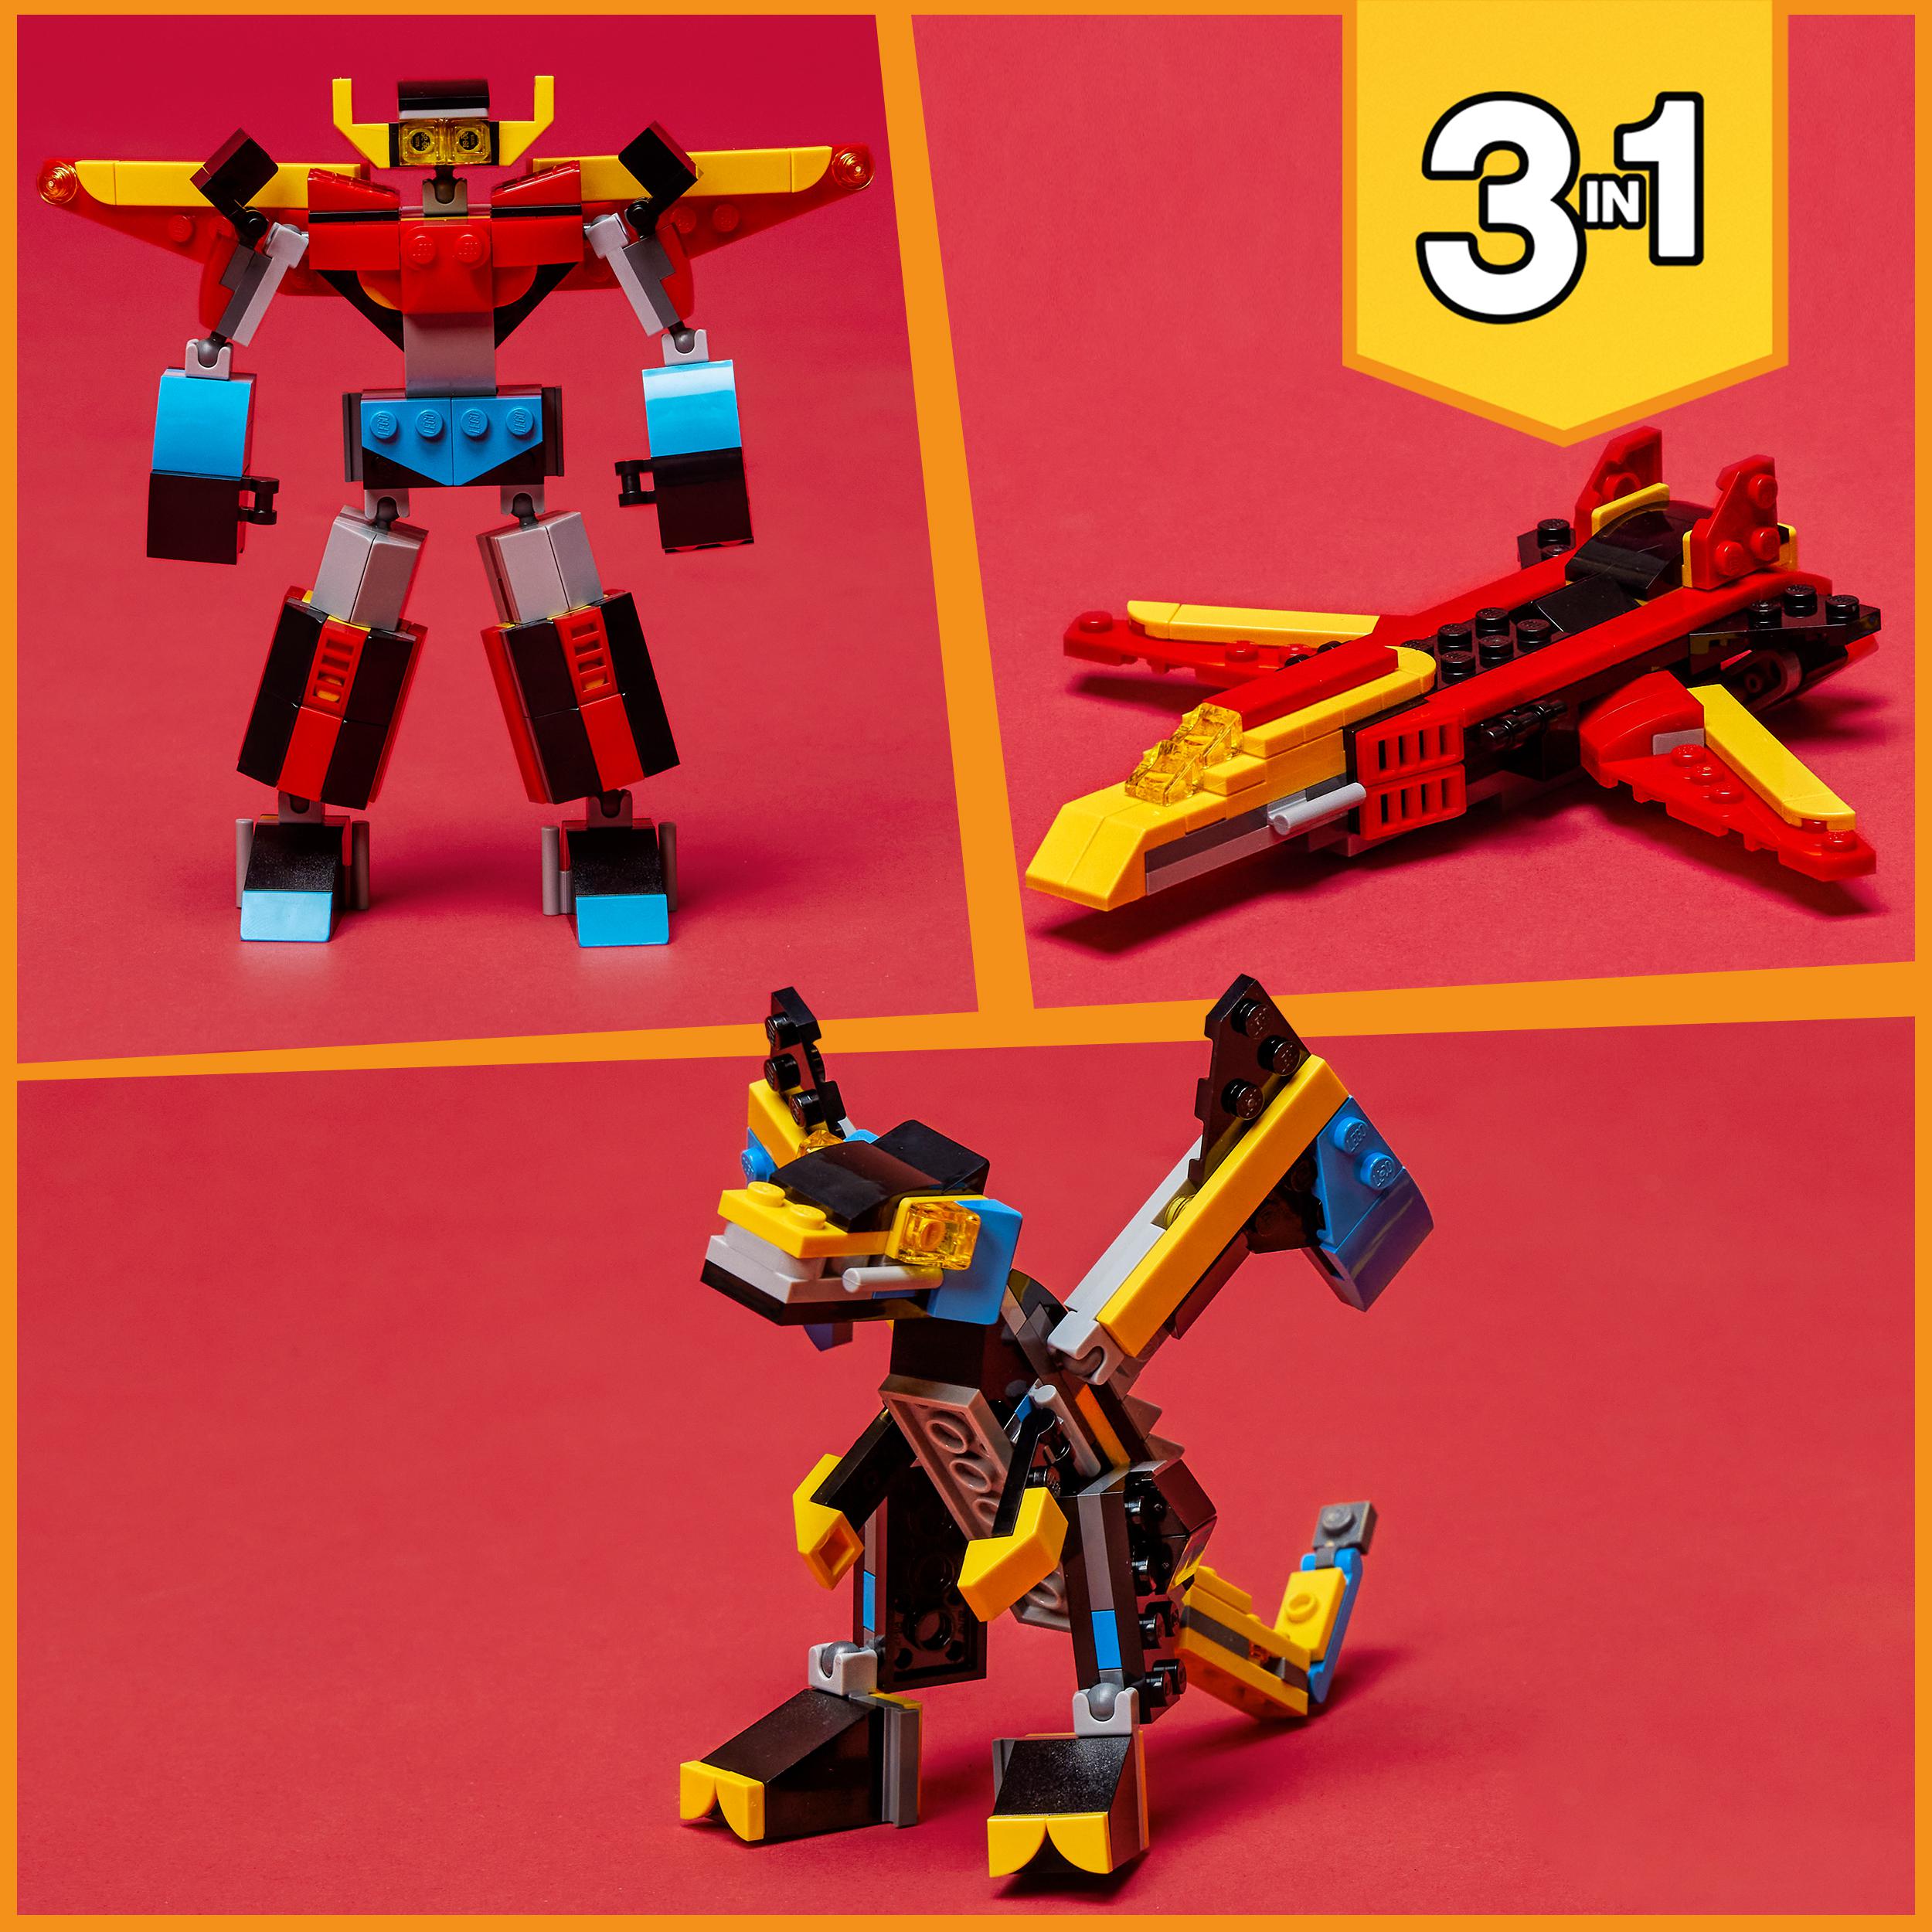 Lego creator 31124 3in1 super robot, set di costruzioni in mattoncini, aereo e drago giocattolo per bambini di 6+ anni - LEGO CREATOR, Lego